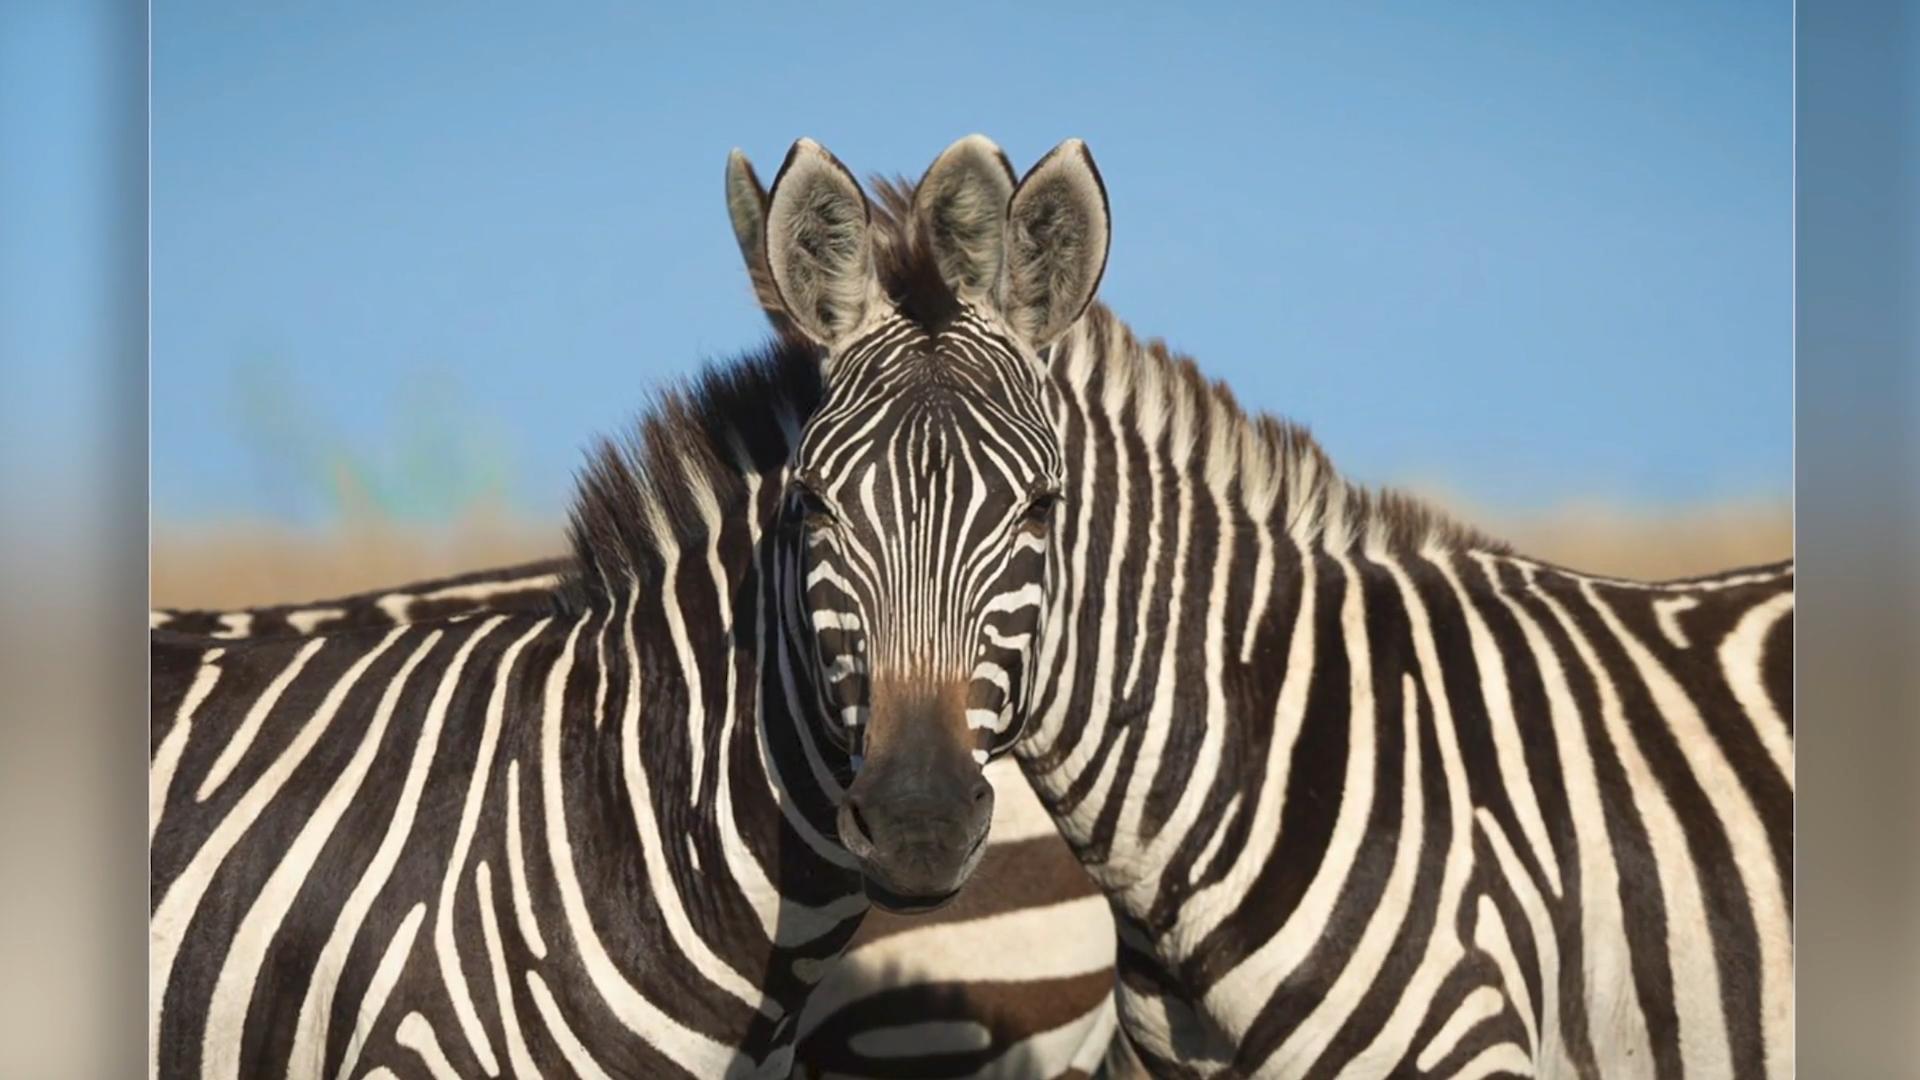 Welches Zebra ist vorne - das linke oder rechte? Optische Täuschung